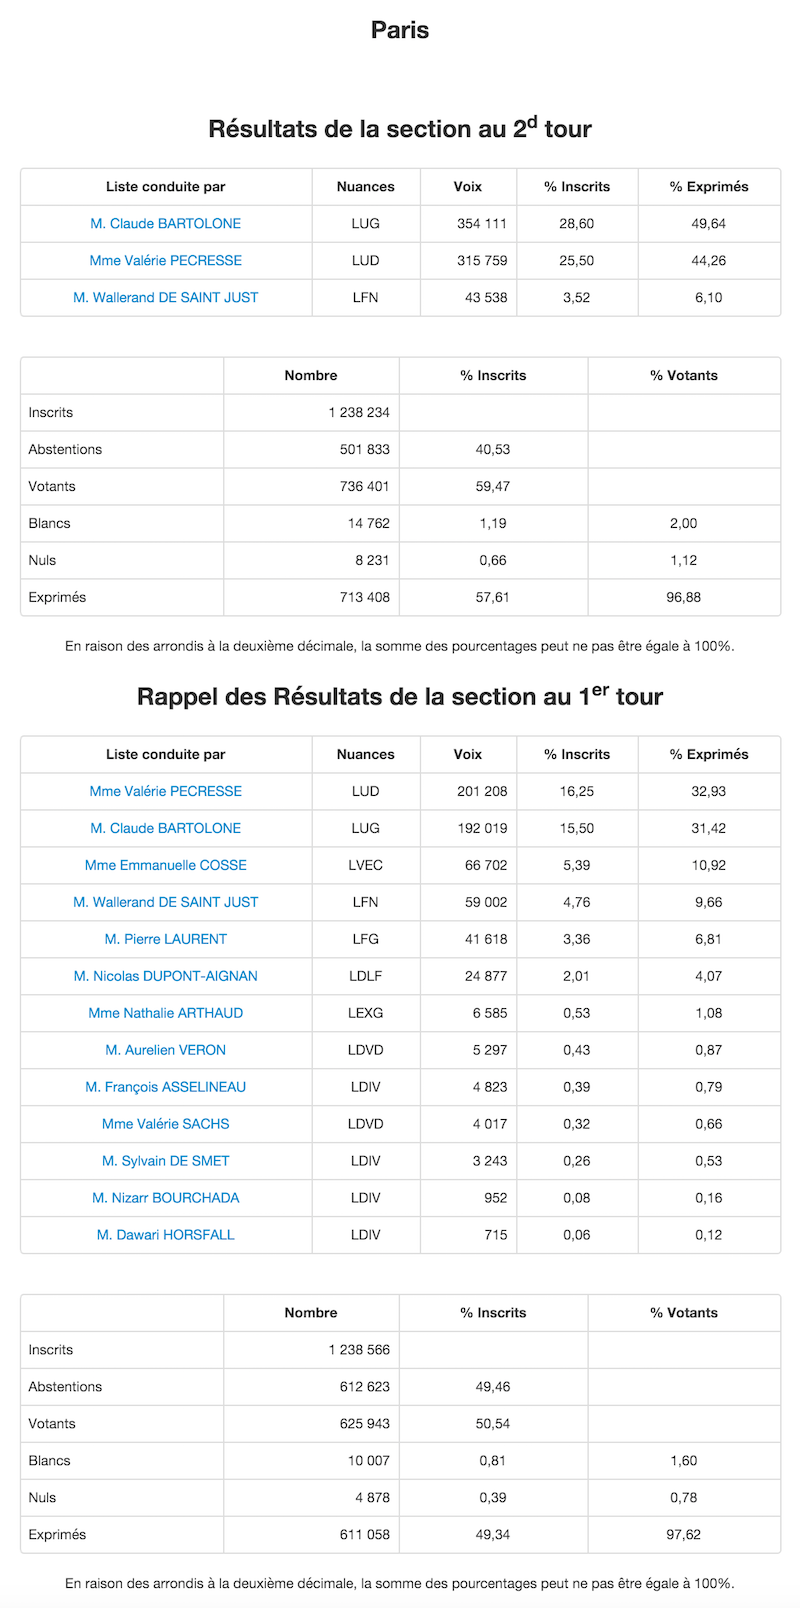 Régionales 2015 et 2010 dans le 19e arrondissement de Paris